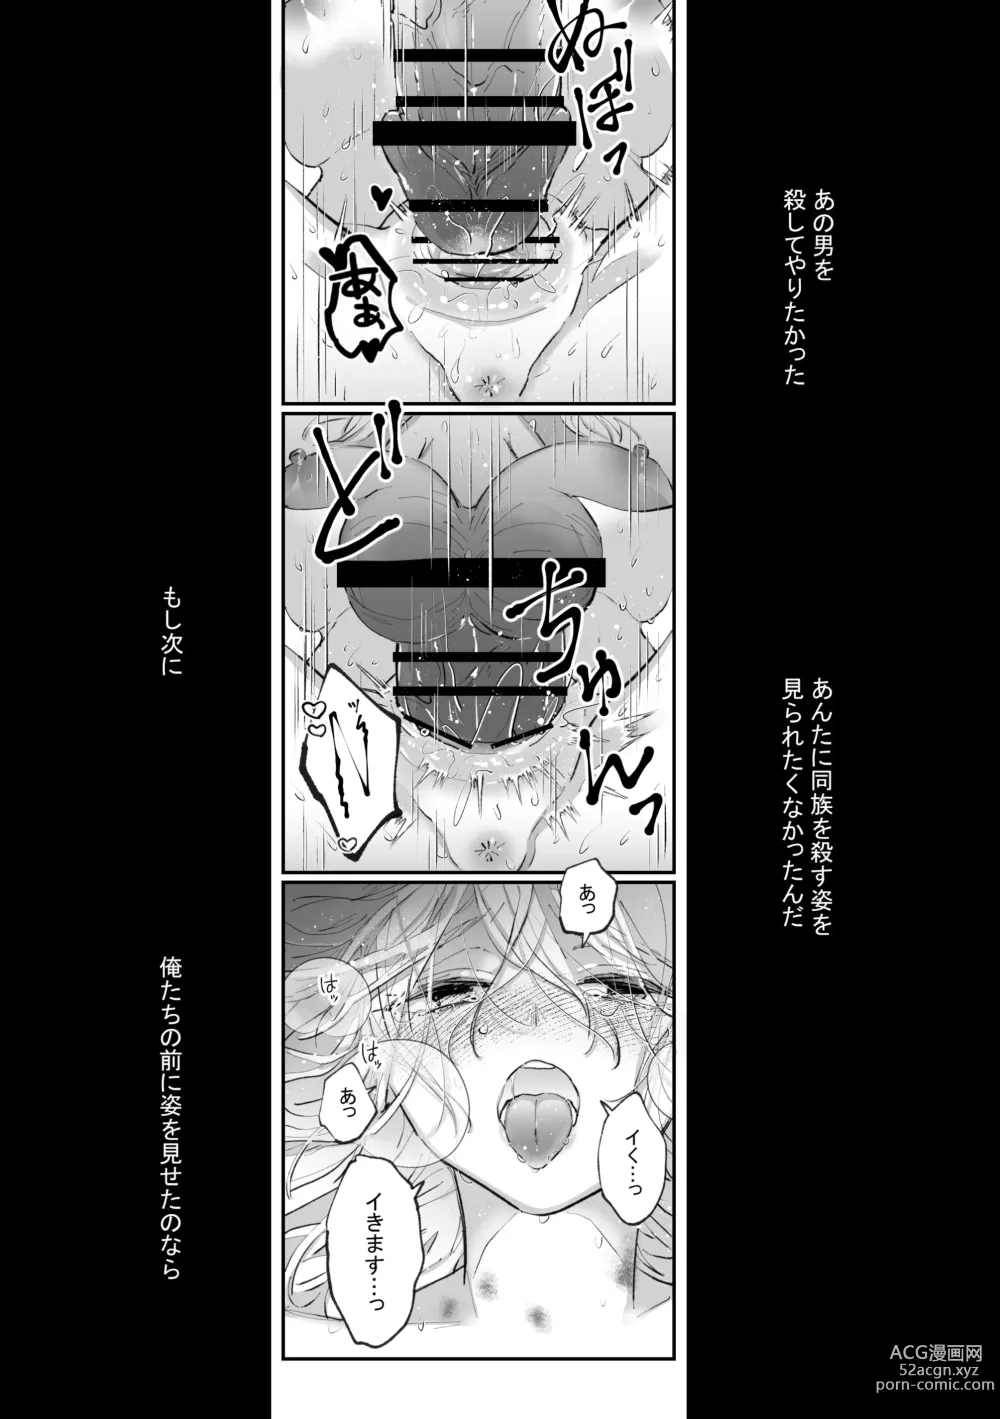 Page 72 of doujinshi Datto wa Ookami no Ai wo Shiru